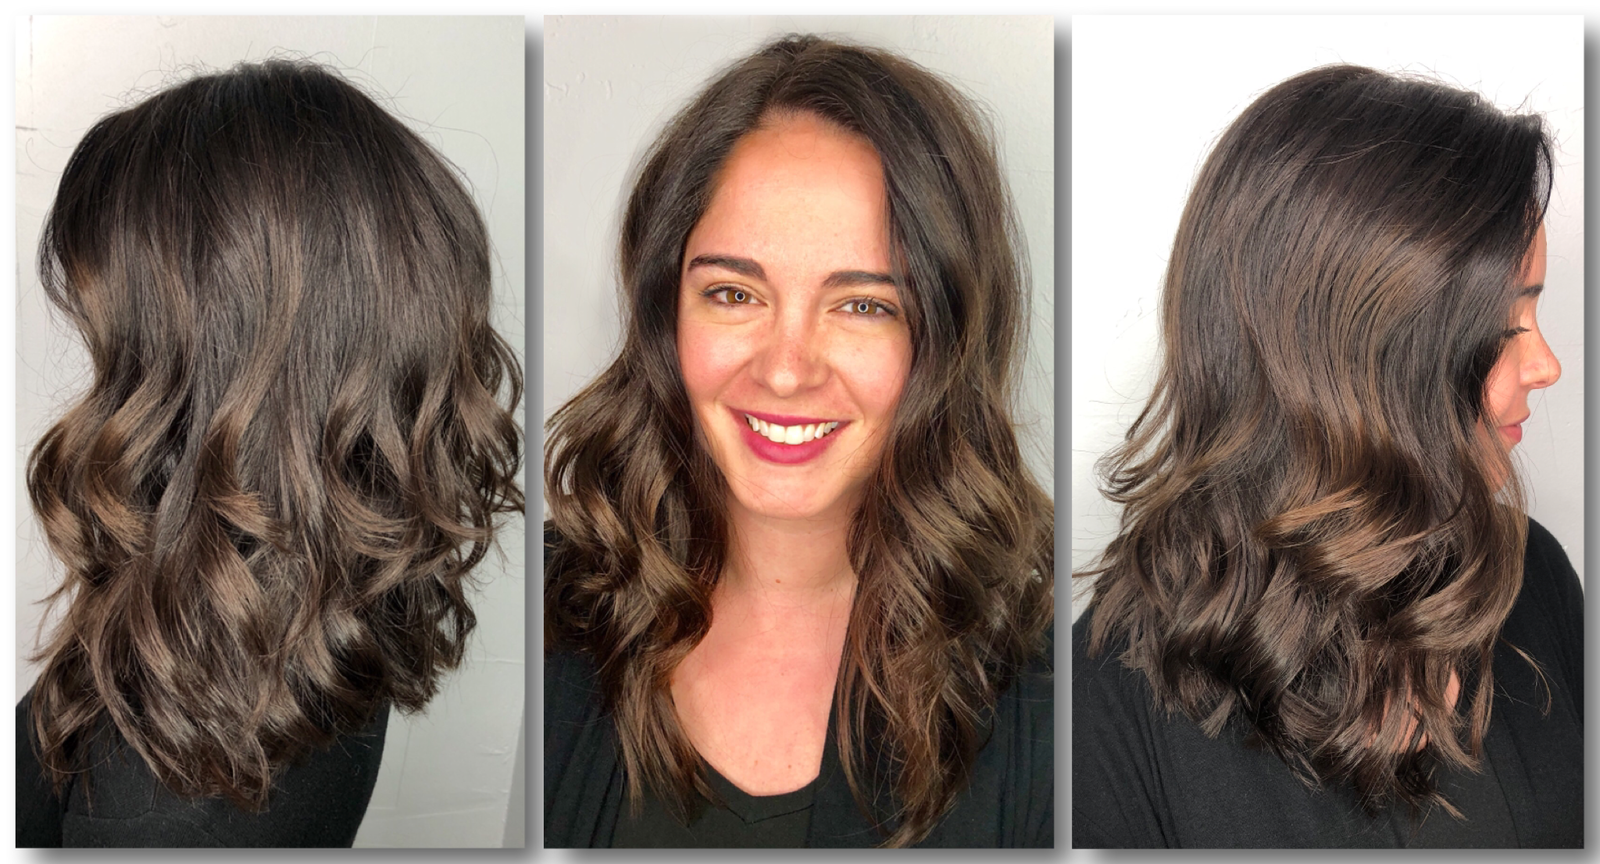 Austin Hair Salon Stylist Amy Bruzzone Lob Color Haircut Waves